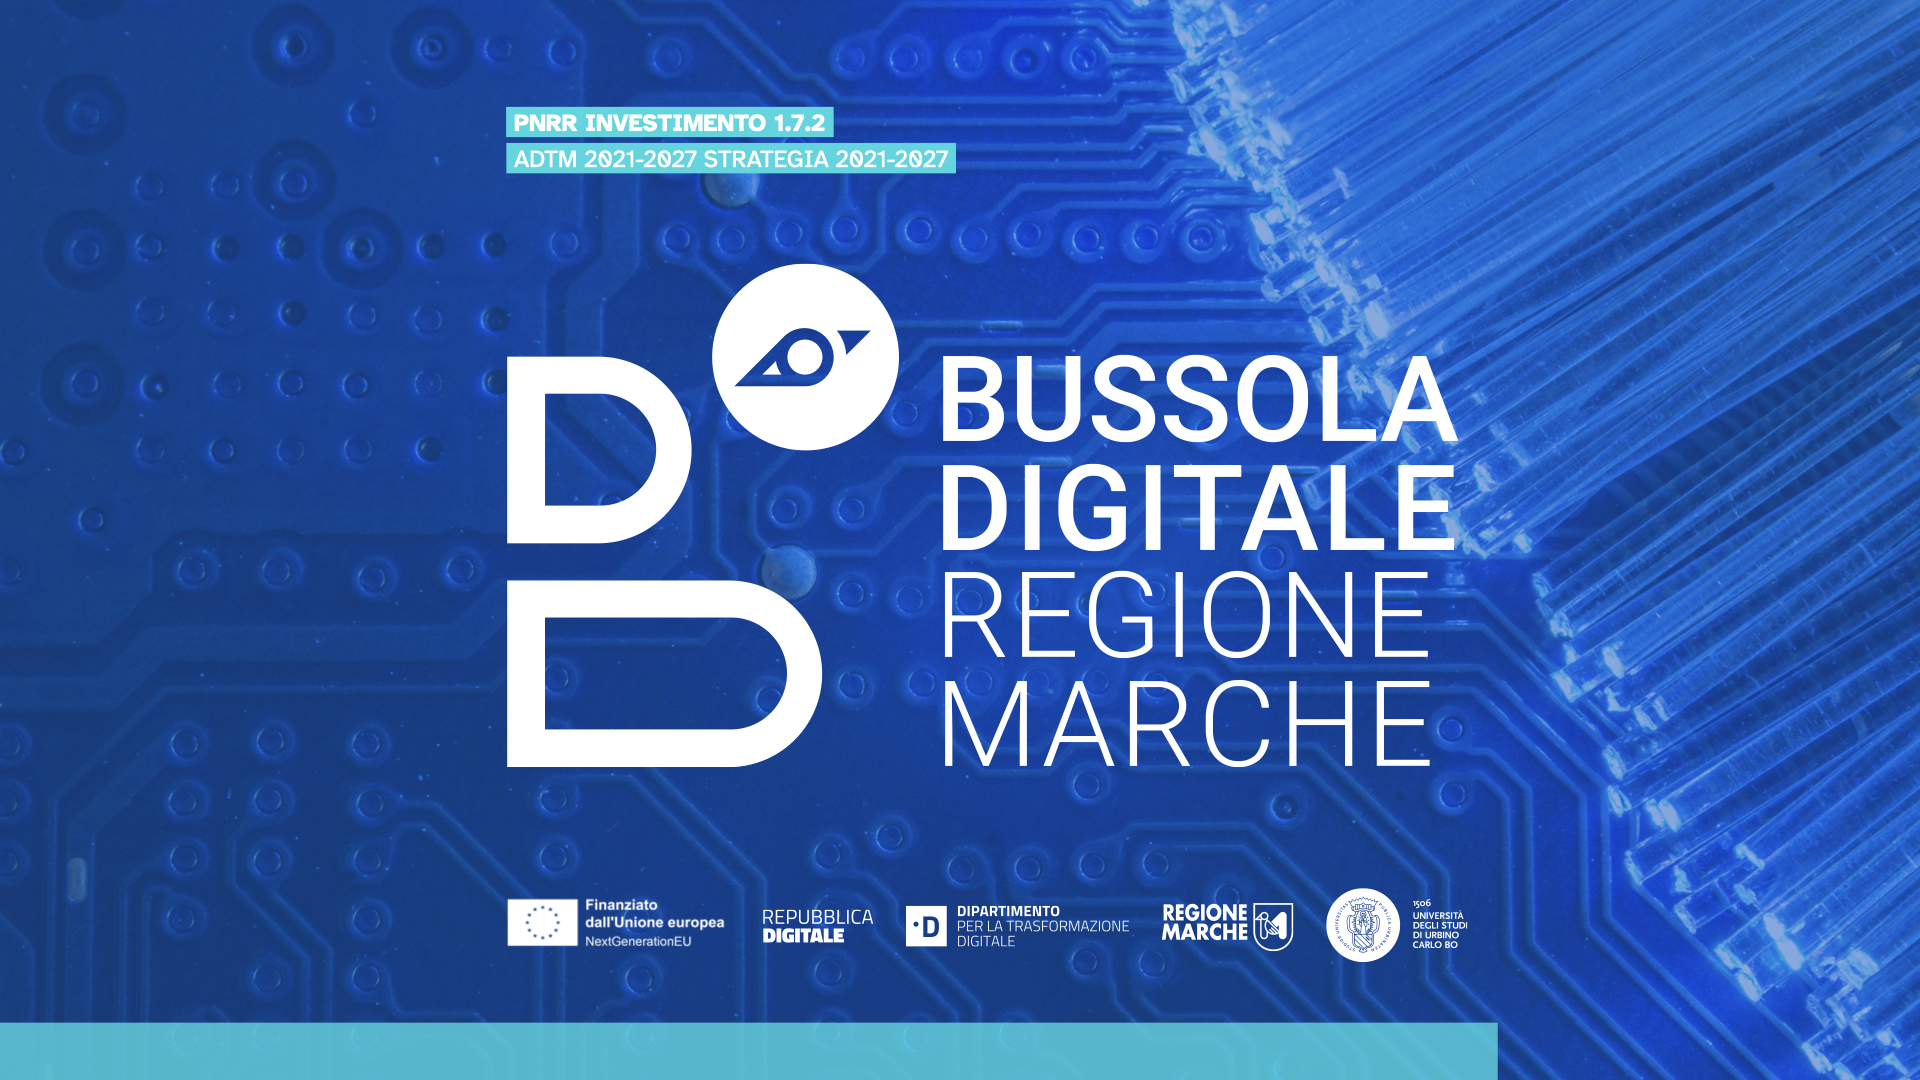 Bussola Digitale - Regione Marche e Uniurb per la Trasformazione Digitale del territorio